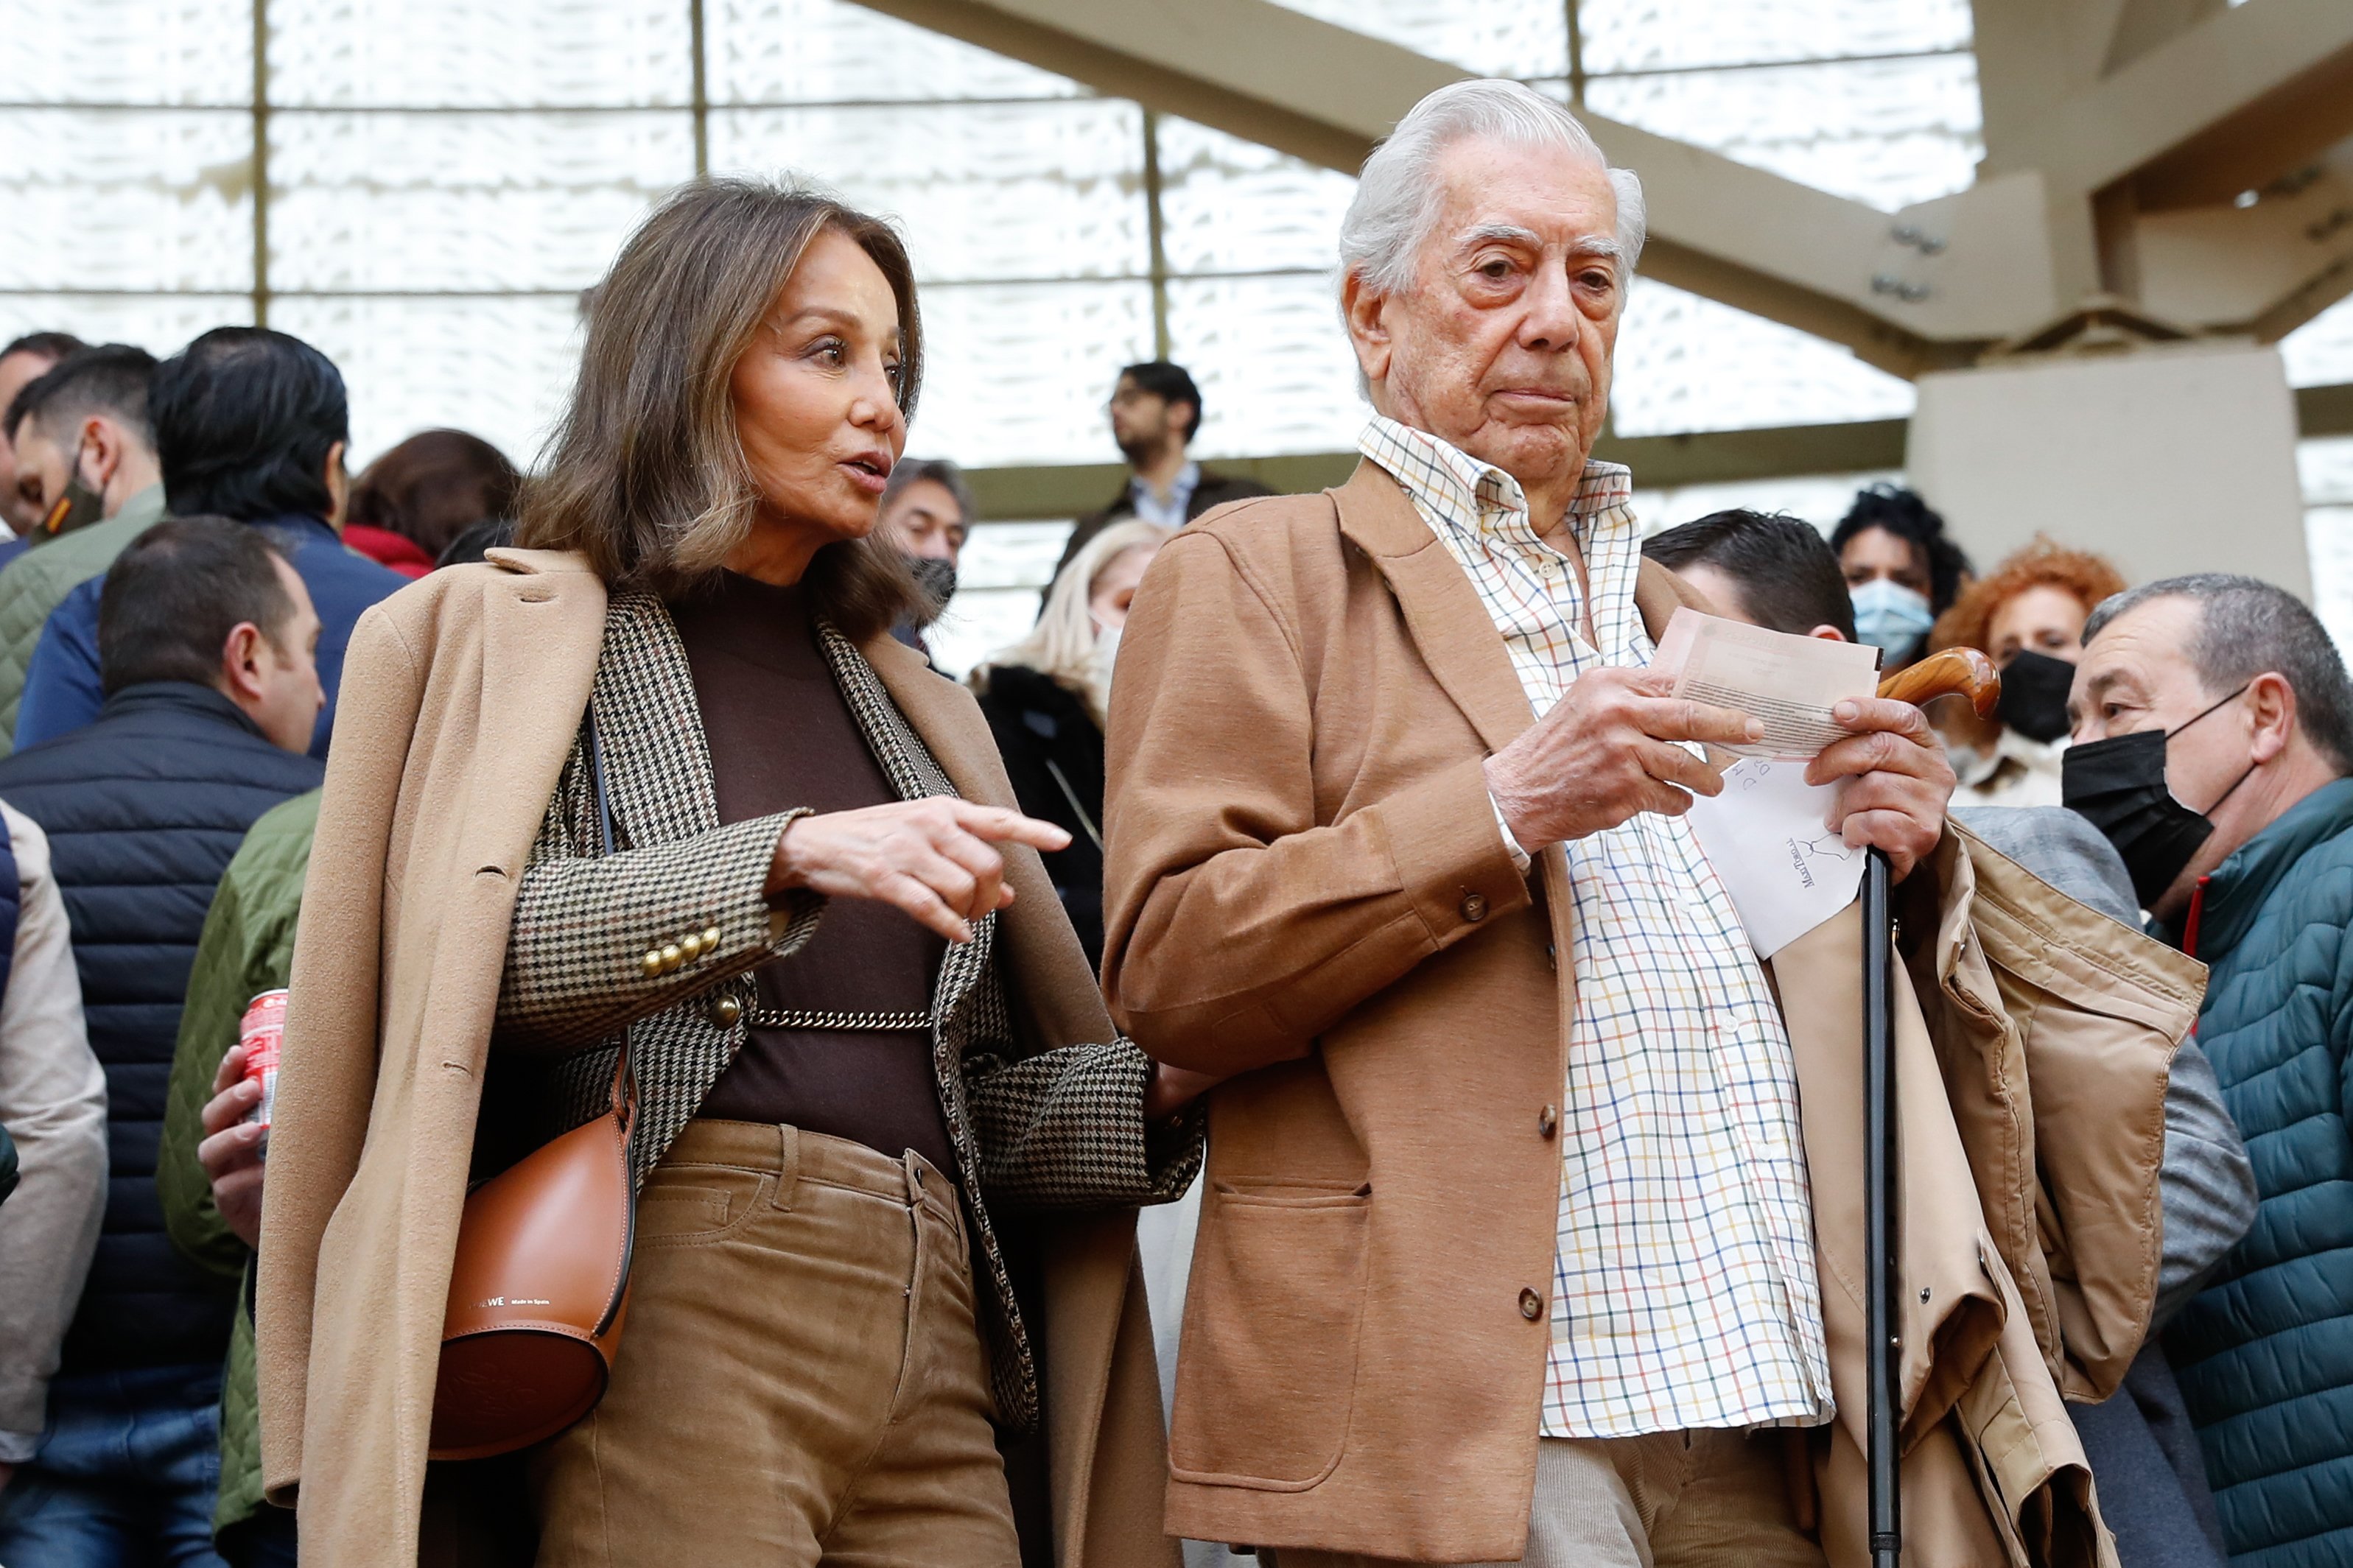 Susanna Griso sacseja els fans de la Preysler i esbomba què li ha demanat Vargas Llosa